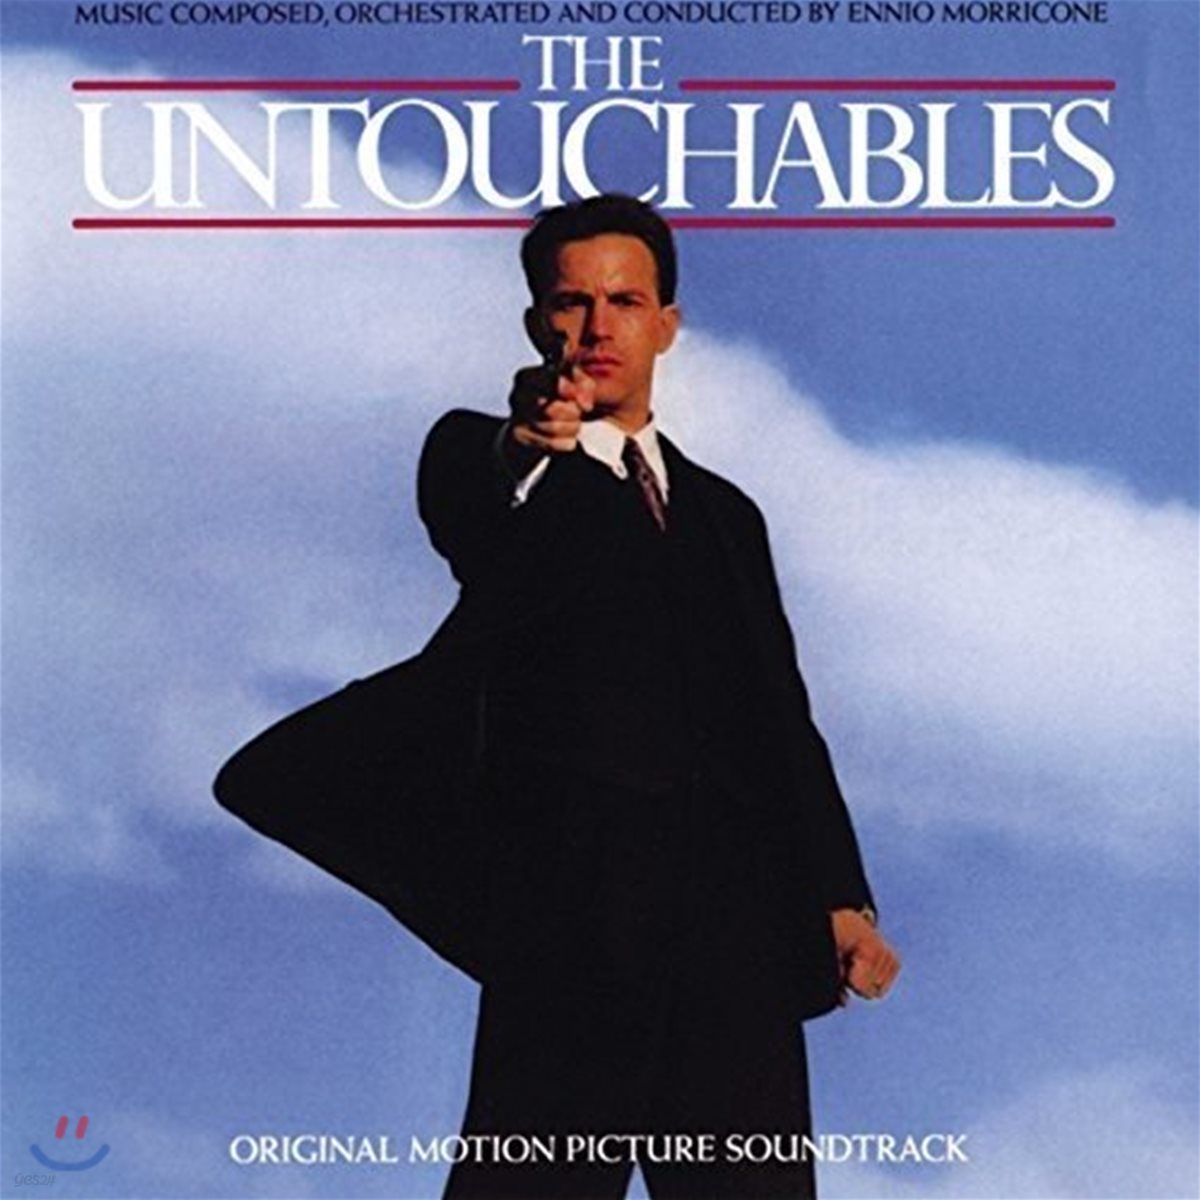 언터처블 영화음악 (The Untouchables OST by Ennio Morricone 엔니오 모리꼬네)